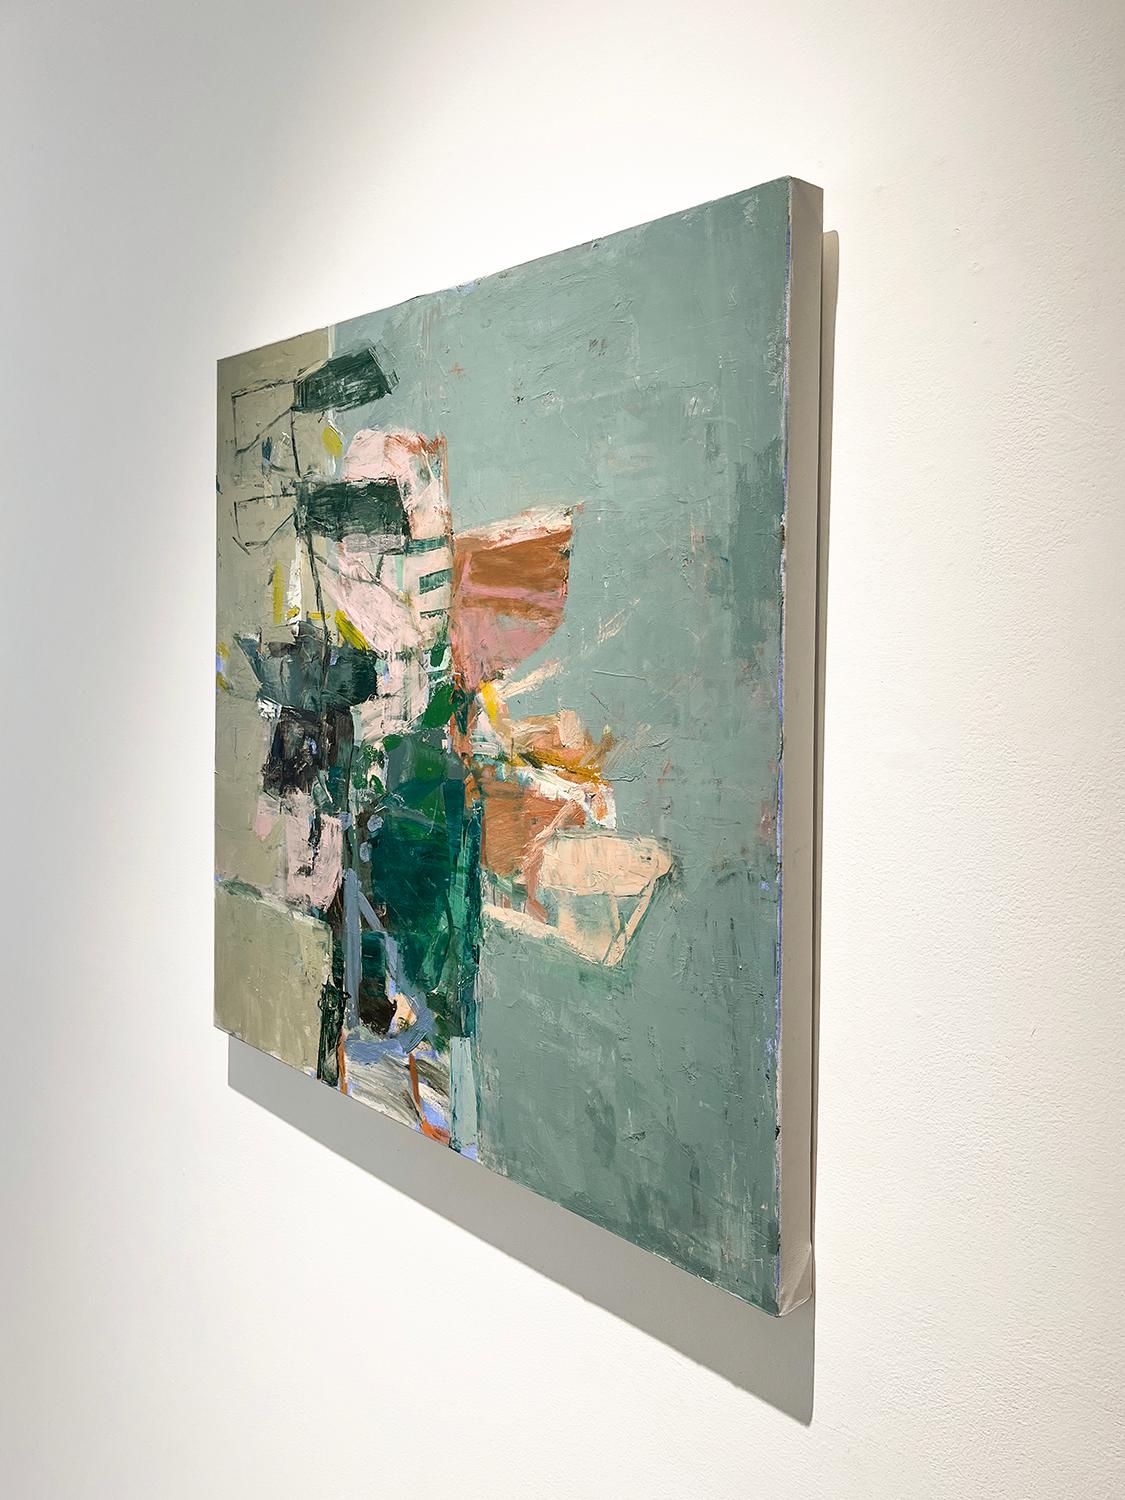 Quadratisches abstraktes expressionistisches Ölgemälde auf Leinwand in steinblau, grün, staubig rosa und braun, mit einem Hauch von orange
Meet June